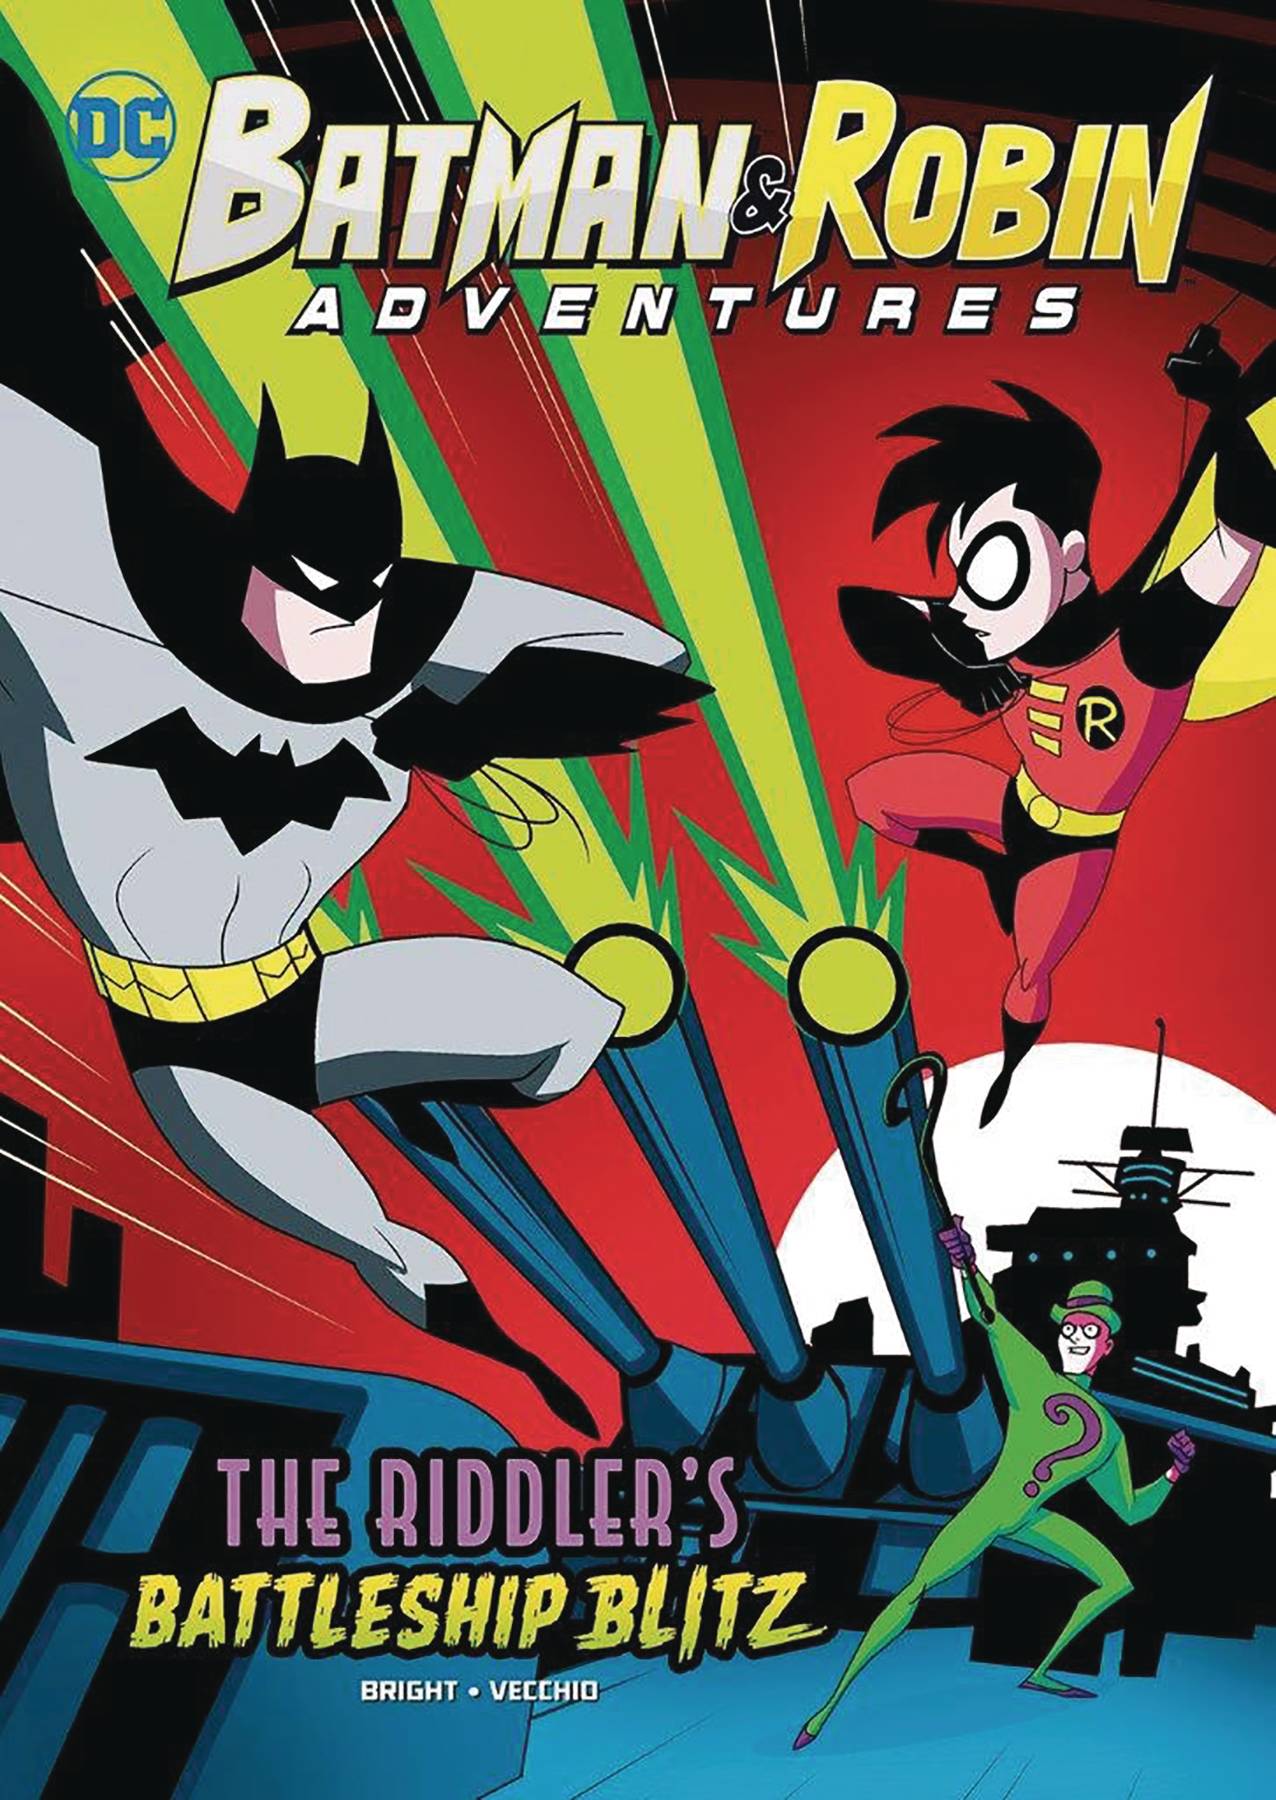 Batman & Robin Adventure Young Reader Graphic Novel #5 Riddlers Battleship Blitz